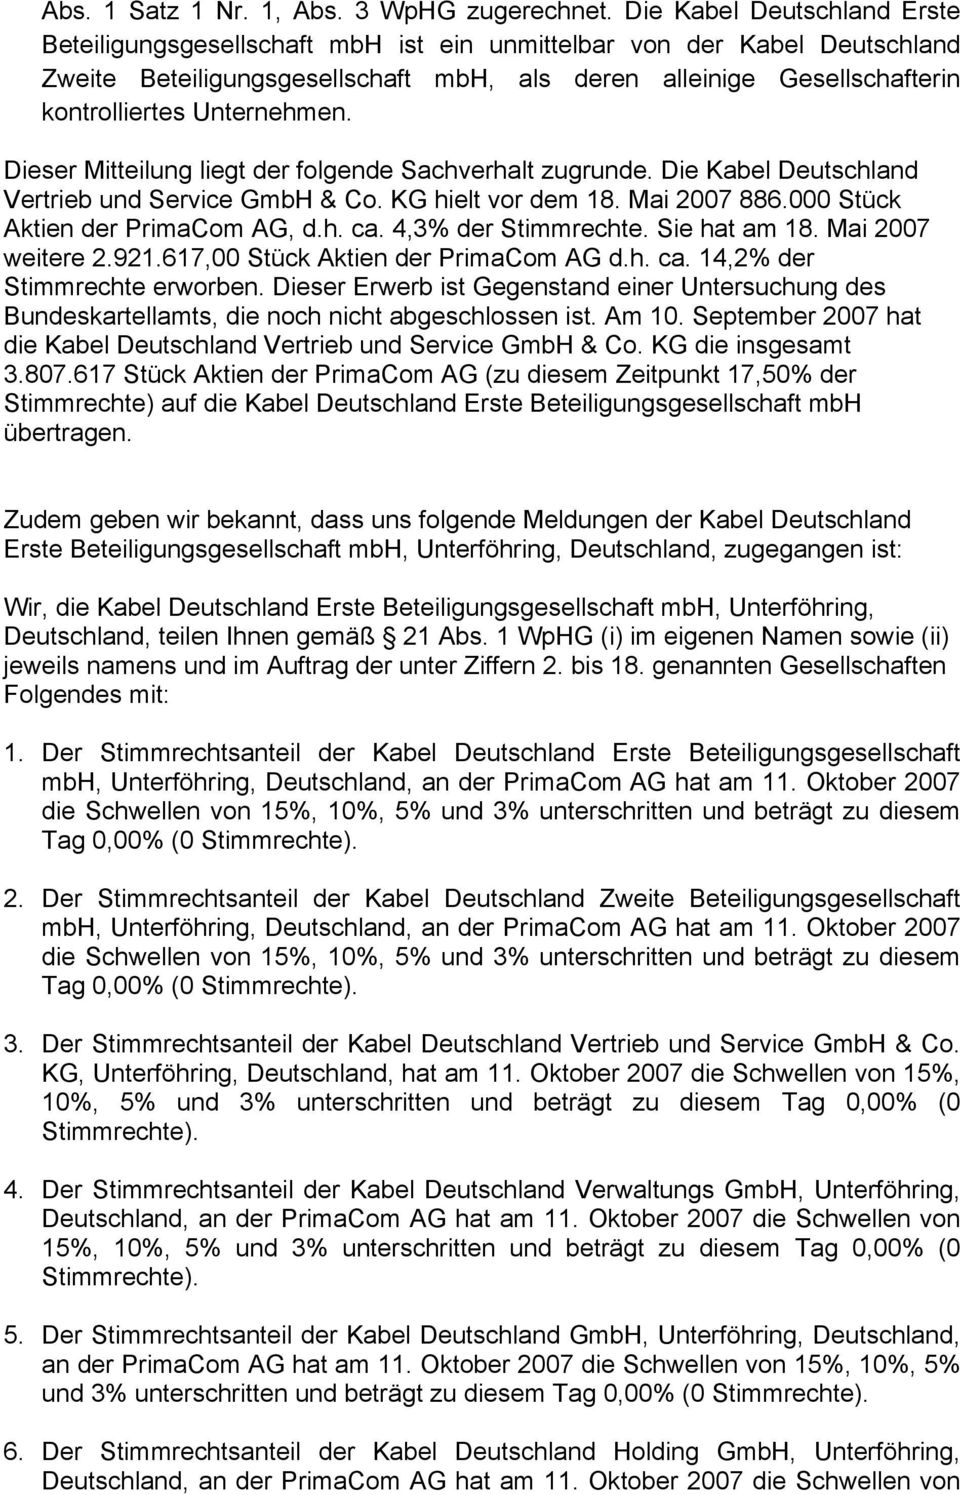 Unternehmen. Dieser Mitteilung liegt der folgende Sachverhalt zugrunde. Die Kabel Deutschland Vertrieb und Service GmbH & Co. KG hielt vor dem 18. Mai 2007 886.000 Stück Aktien der PrimaCom AG, d.h. ca.